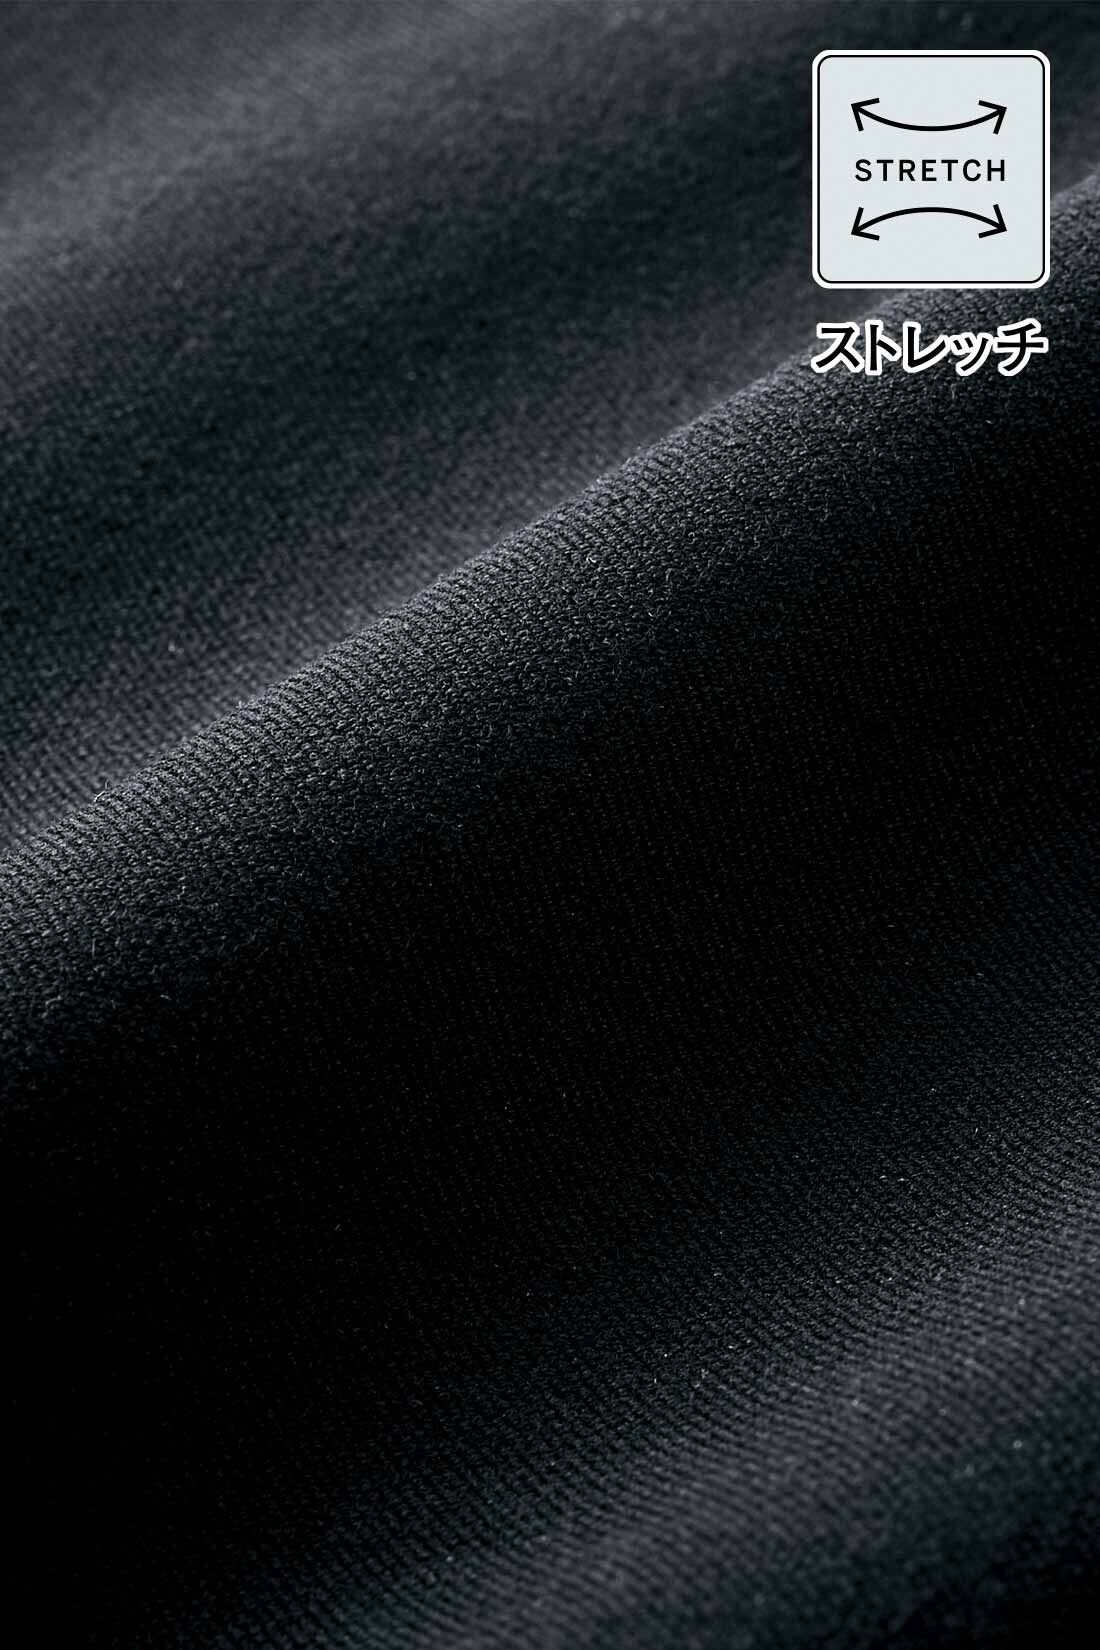 DRECO by IEDIT|【3～10日でお届け】IEDIT[イディット]　いつもキレイな黒が続く オンオフ万能 純黒デザインワンピ―ス〈ブラック〉|しわになりにくく、ウオッシャブルな素材でお手入れがらくなストレッチ素材。布はくの純黒素材はきちんと見えて着心地伸びやか。